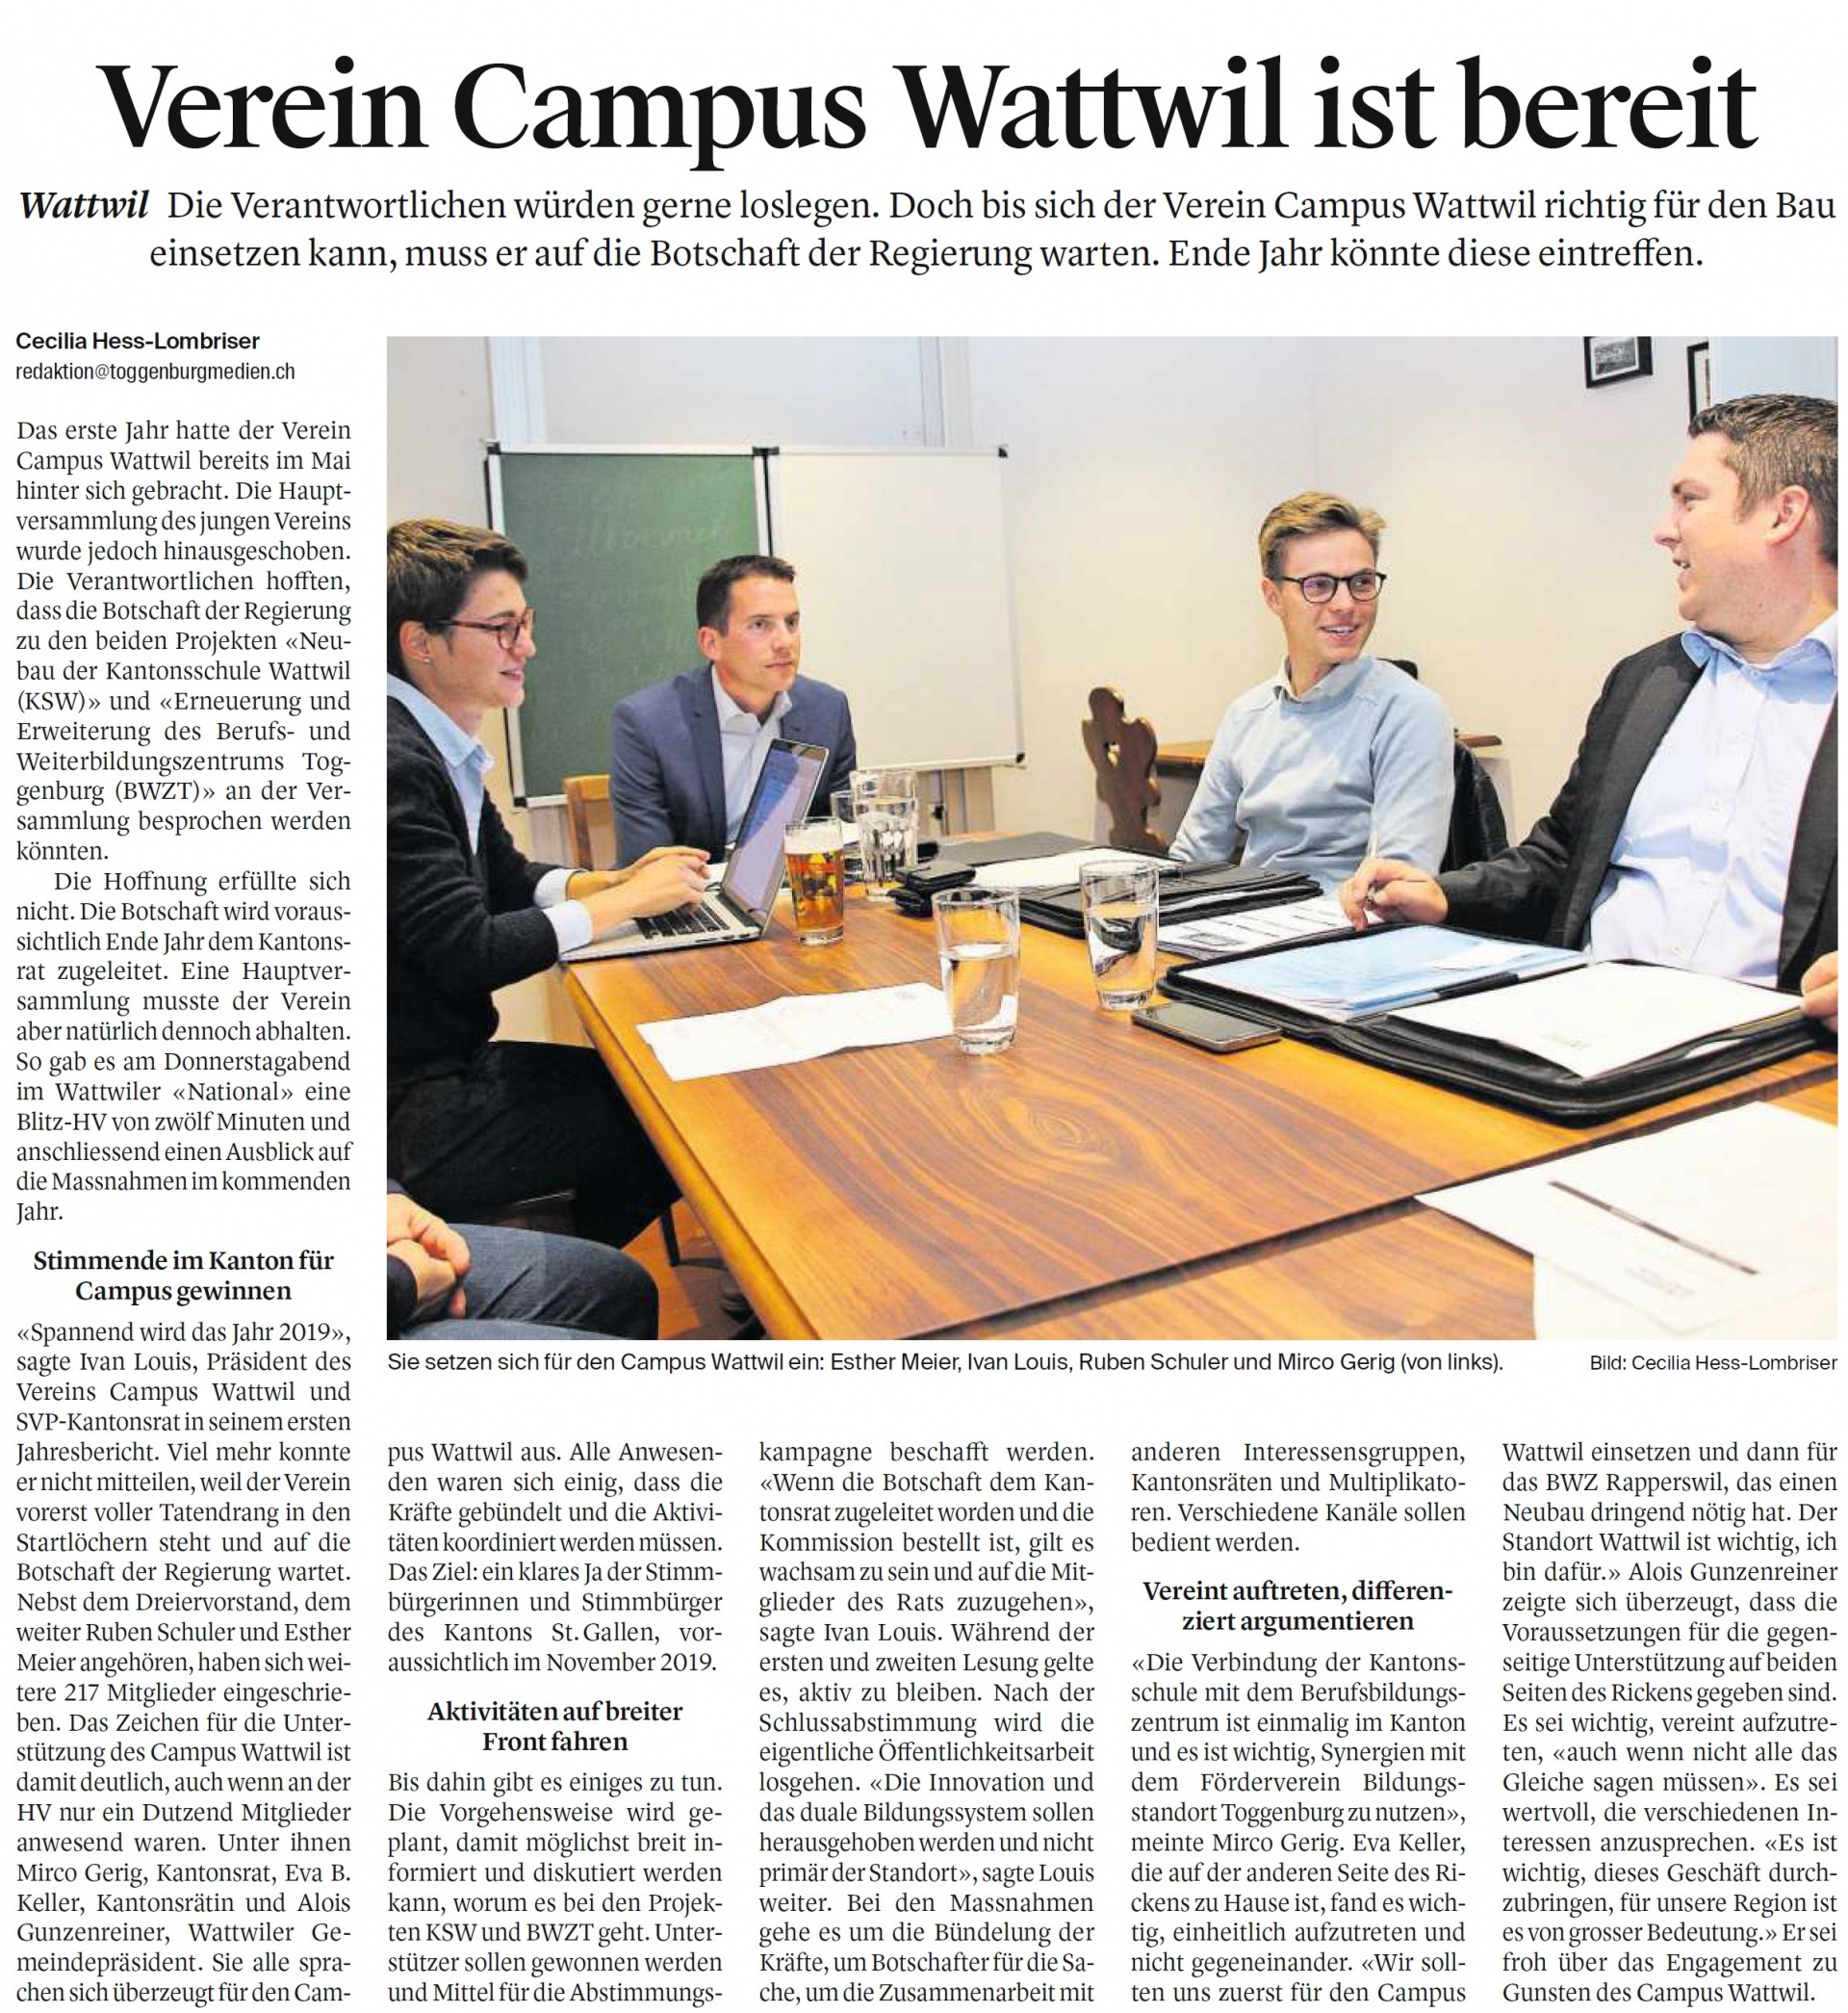 Verein Campus Wattwil ist bereit (Samstag, 06.10.2018)